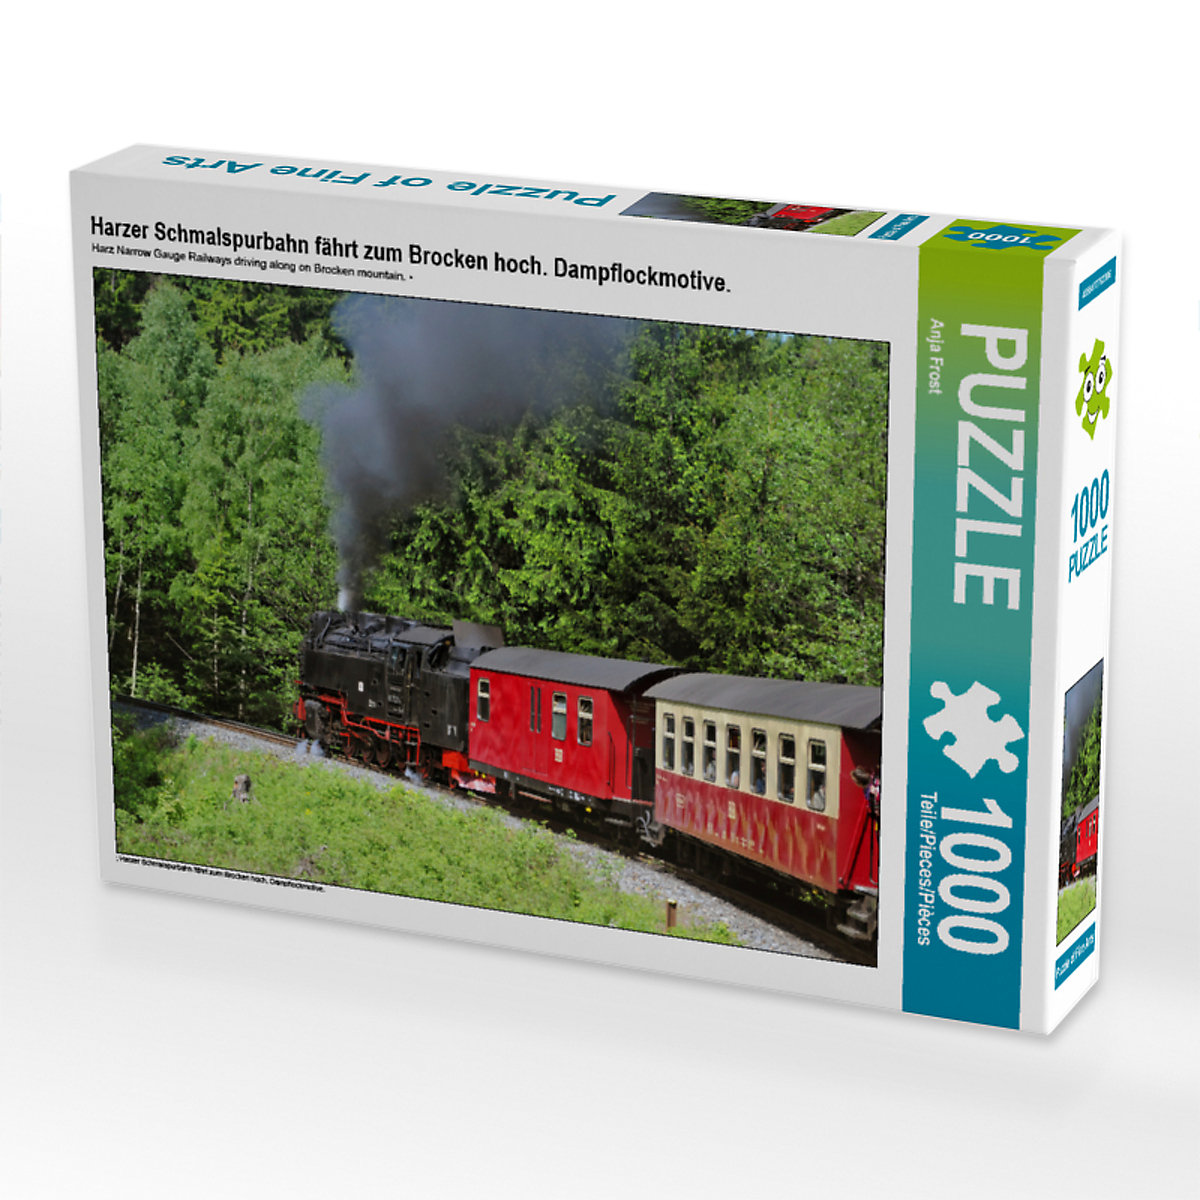 CALVENDO® Puzzle CALVENDO Puzzle Harzer Schmalspurbahn fährt zum Brocken hoch. Dampflockmotive. 1000 Teile Foto-Puzzle für glückliche Stunden